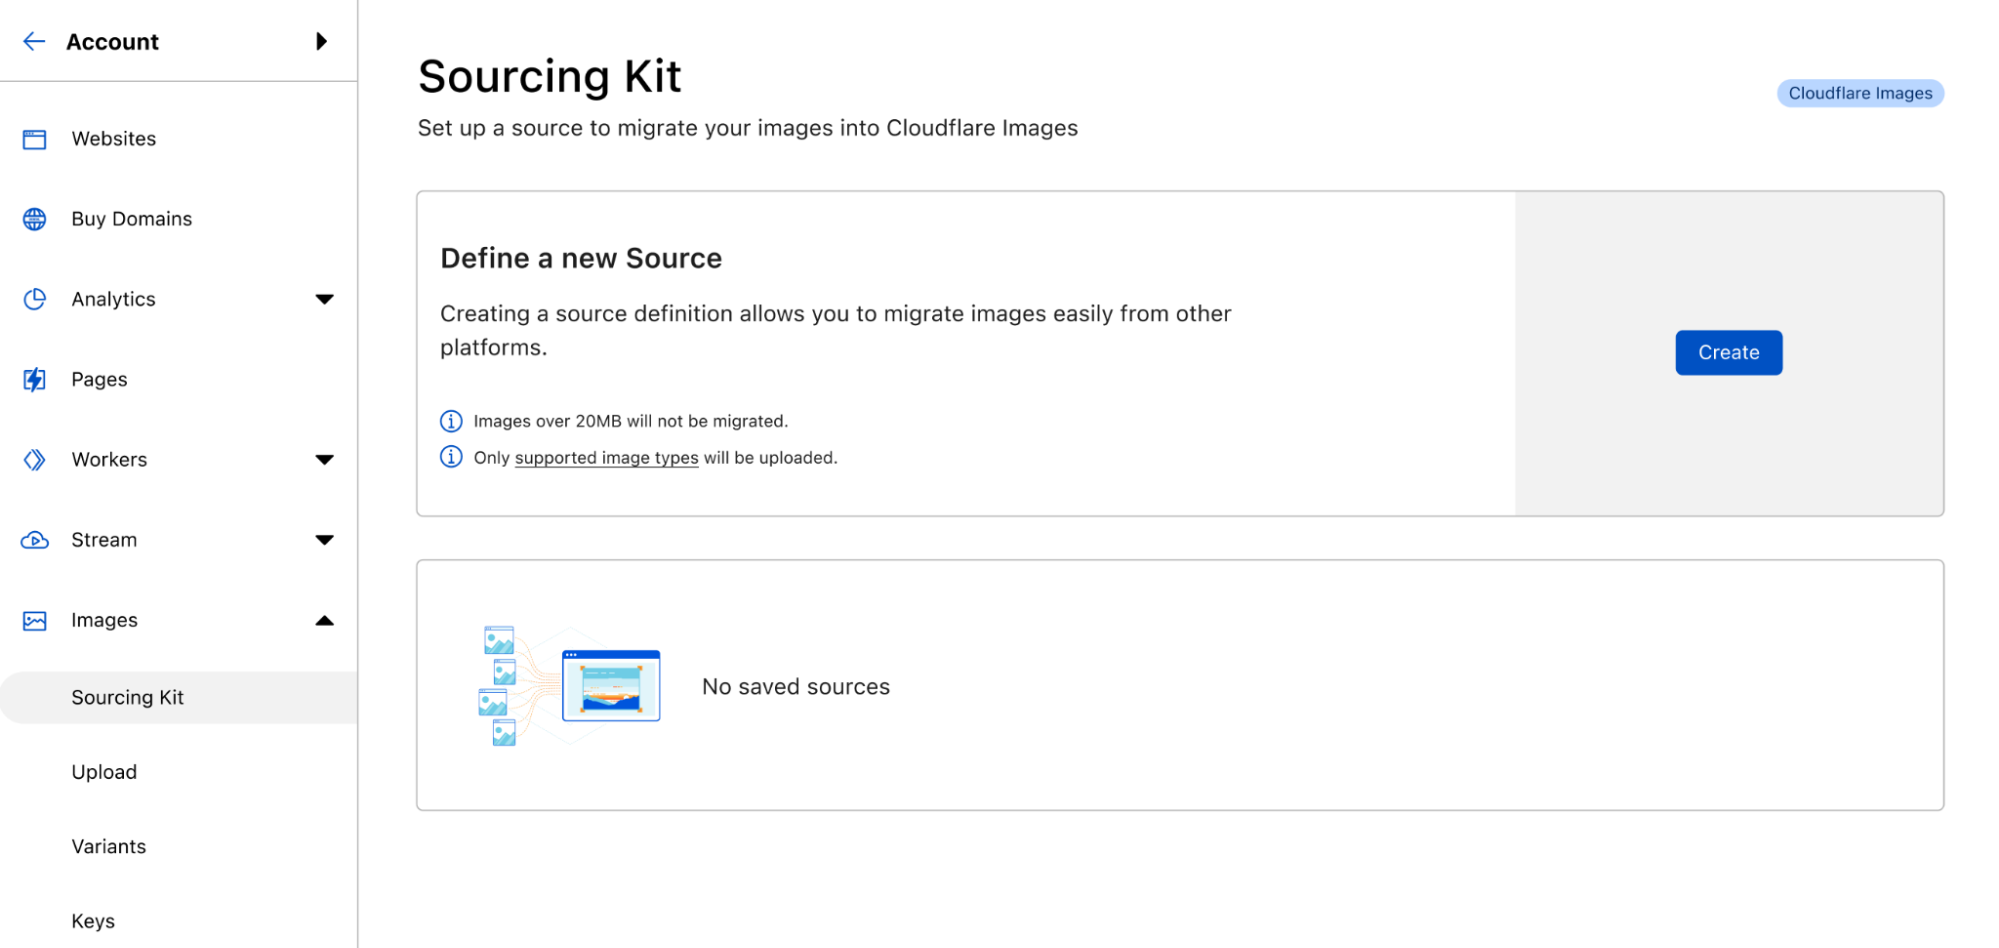 der neue Startbildschirm für das Cloudflare Images Sourcing Kit